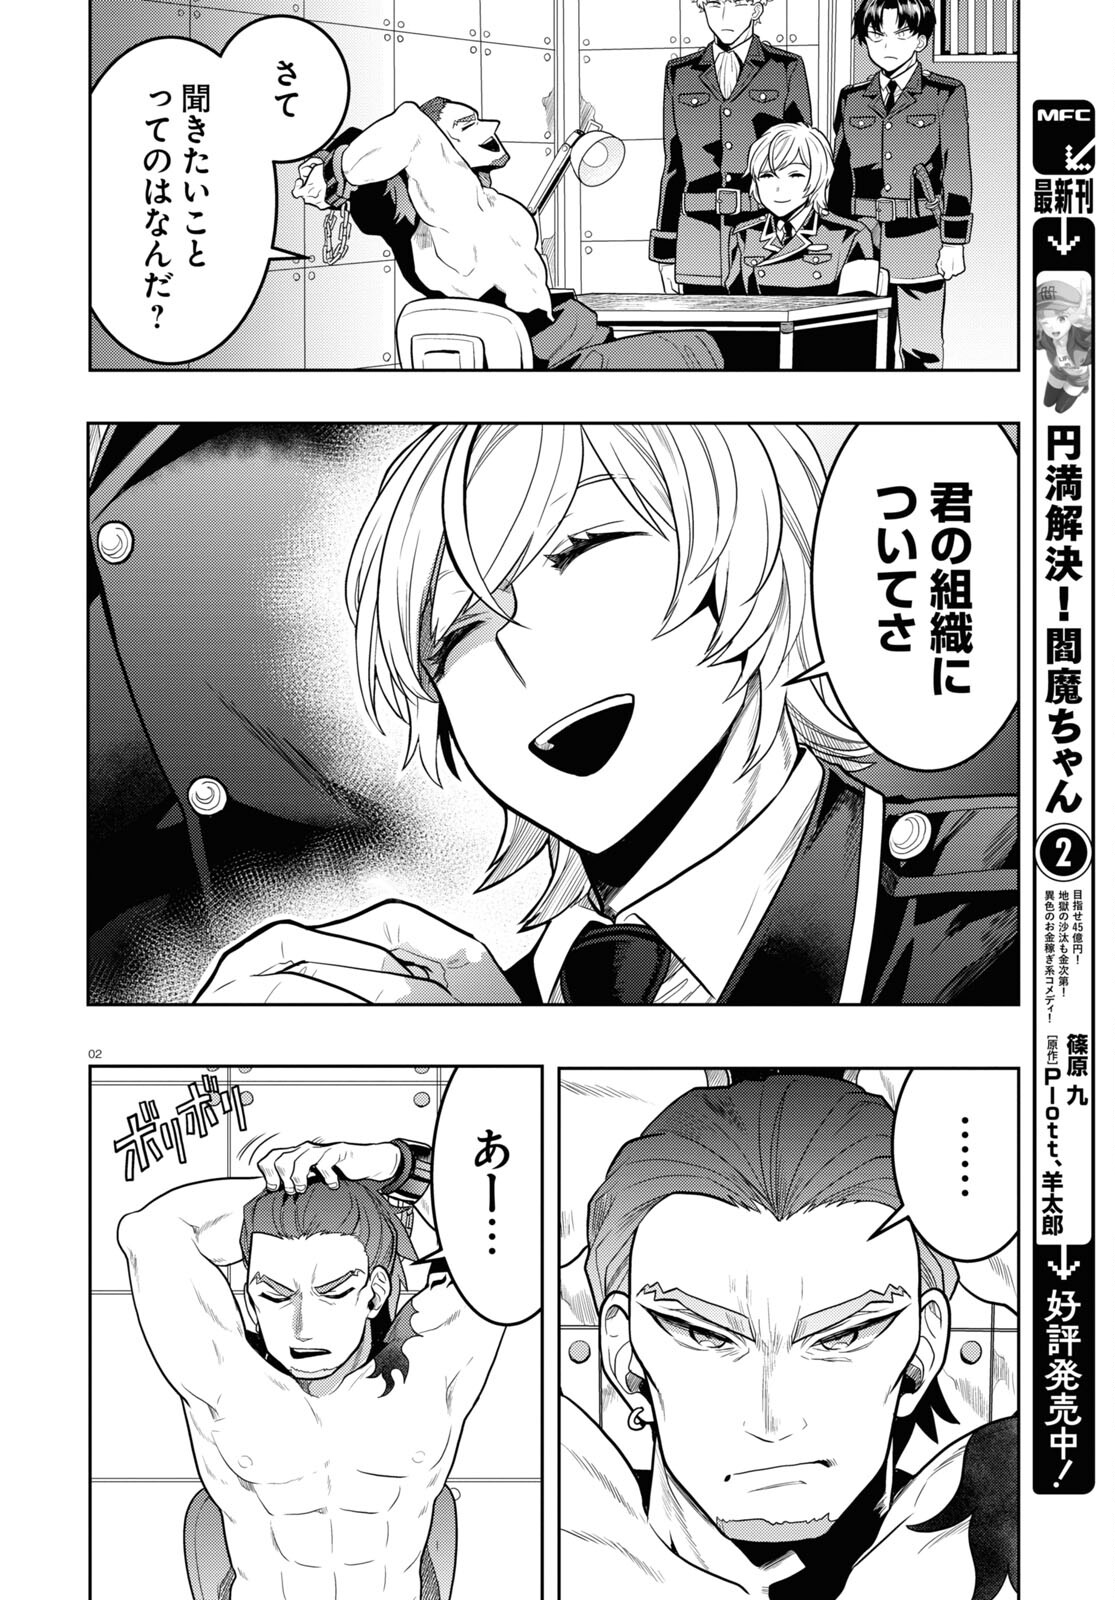 Nichijou Lock - Chapter 29 - Page 2